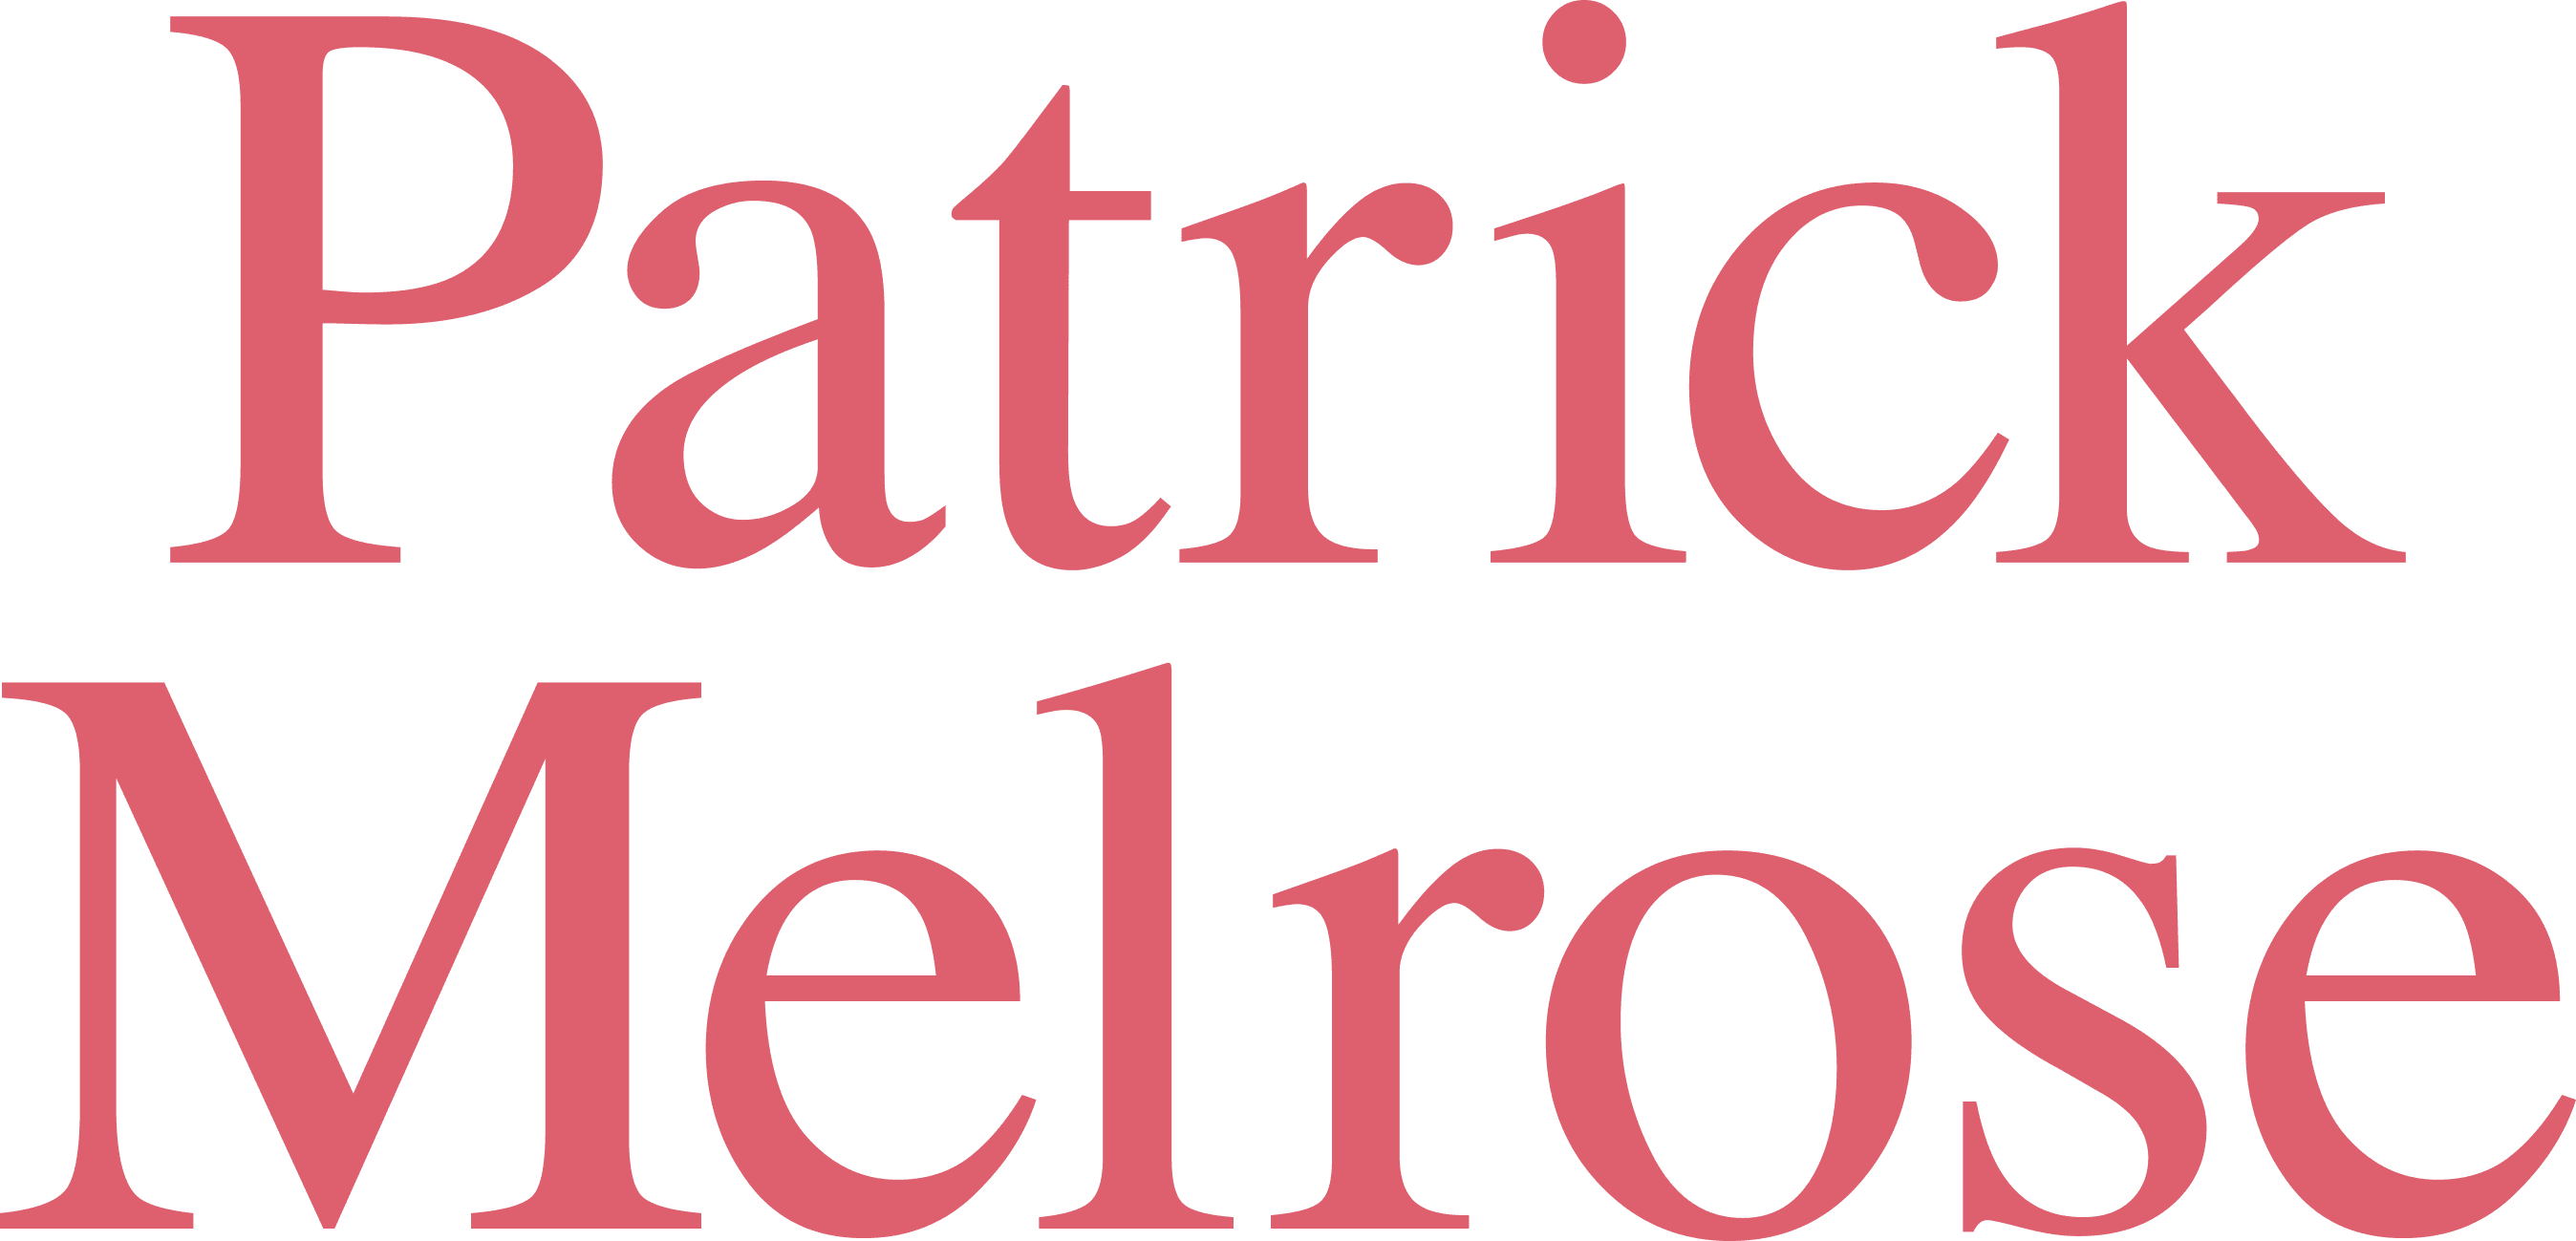 Patrick Melrose logo